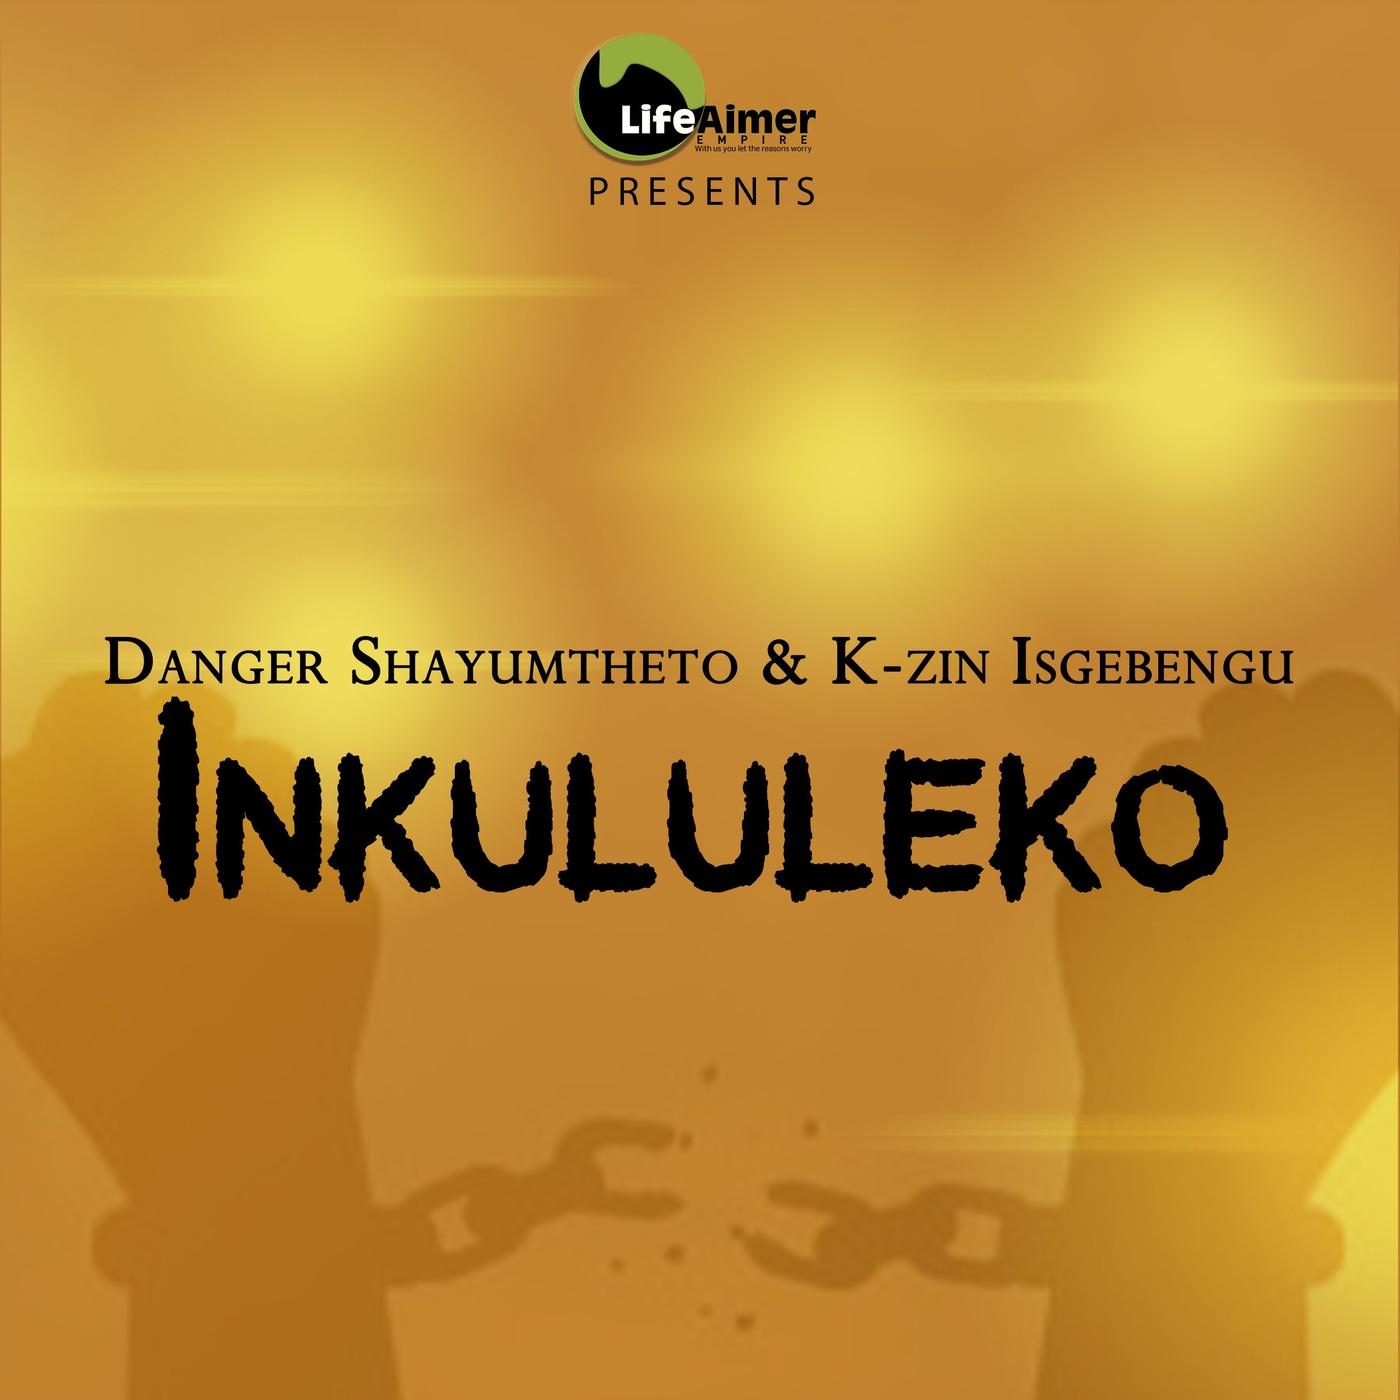 Danger Shayumthetho, K-zin Isgebengu - Inkululeko [LAP122]